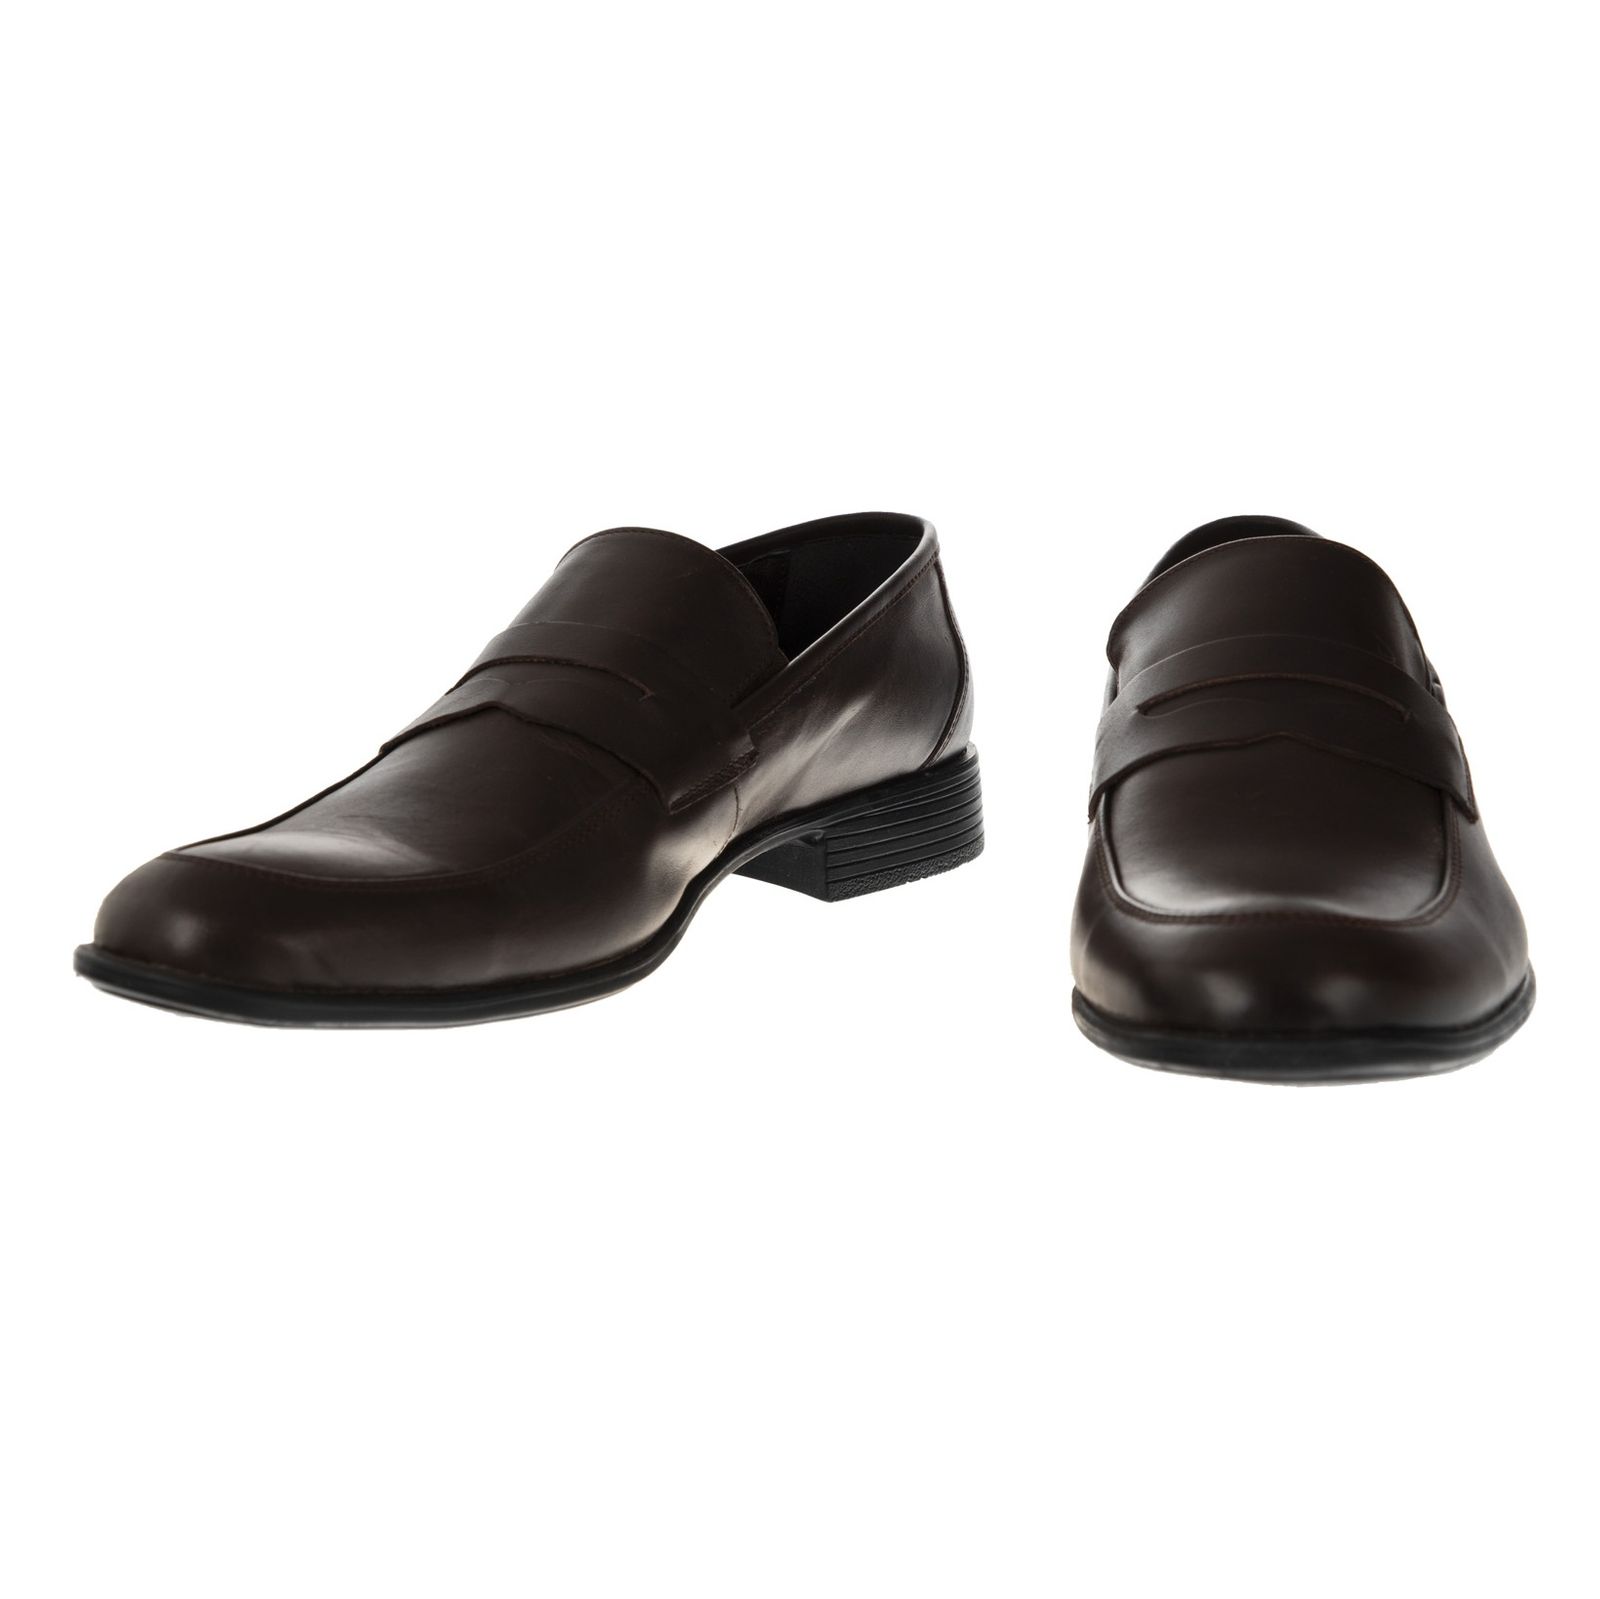 کفش مردانه گاراموند مدل 100255604-103 - قهوه ای - 6